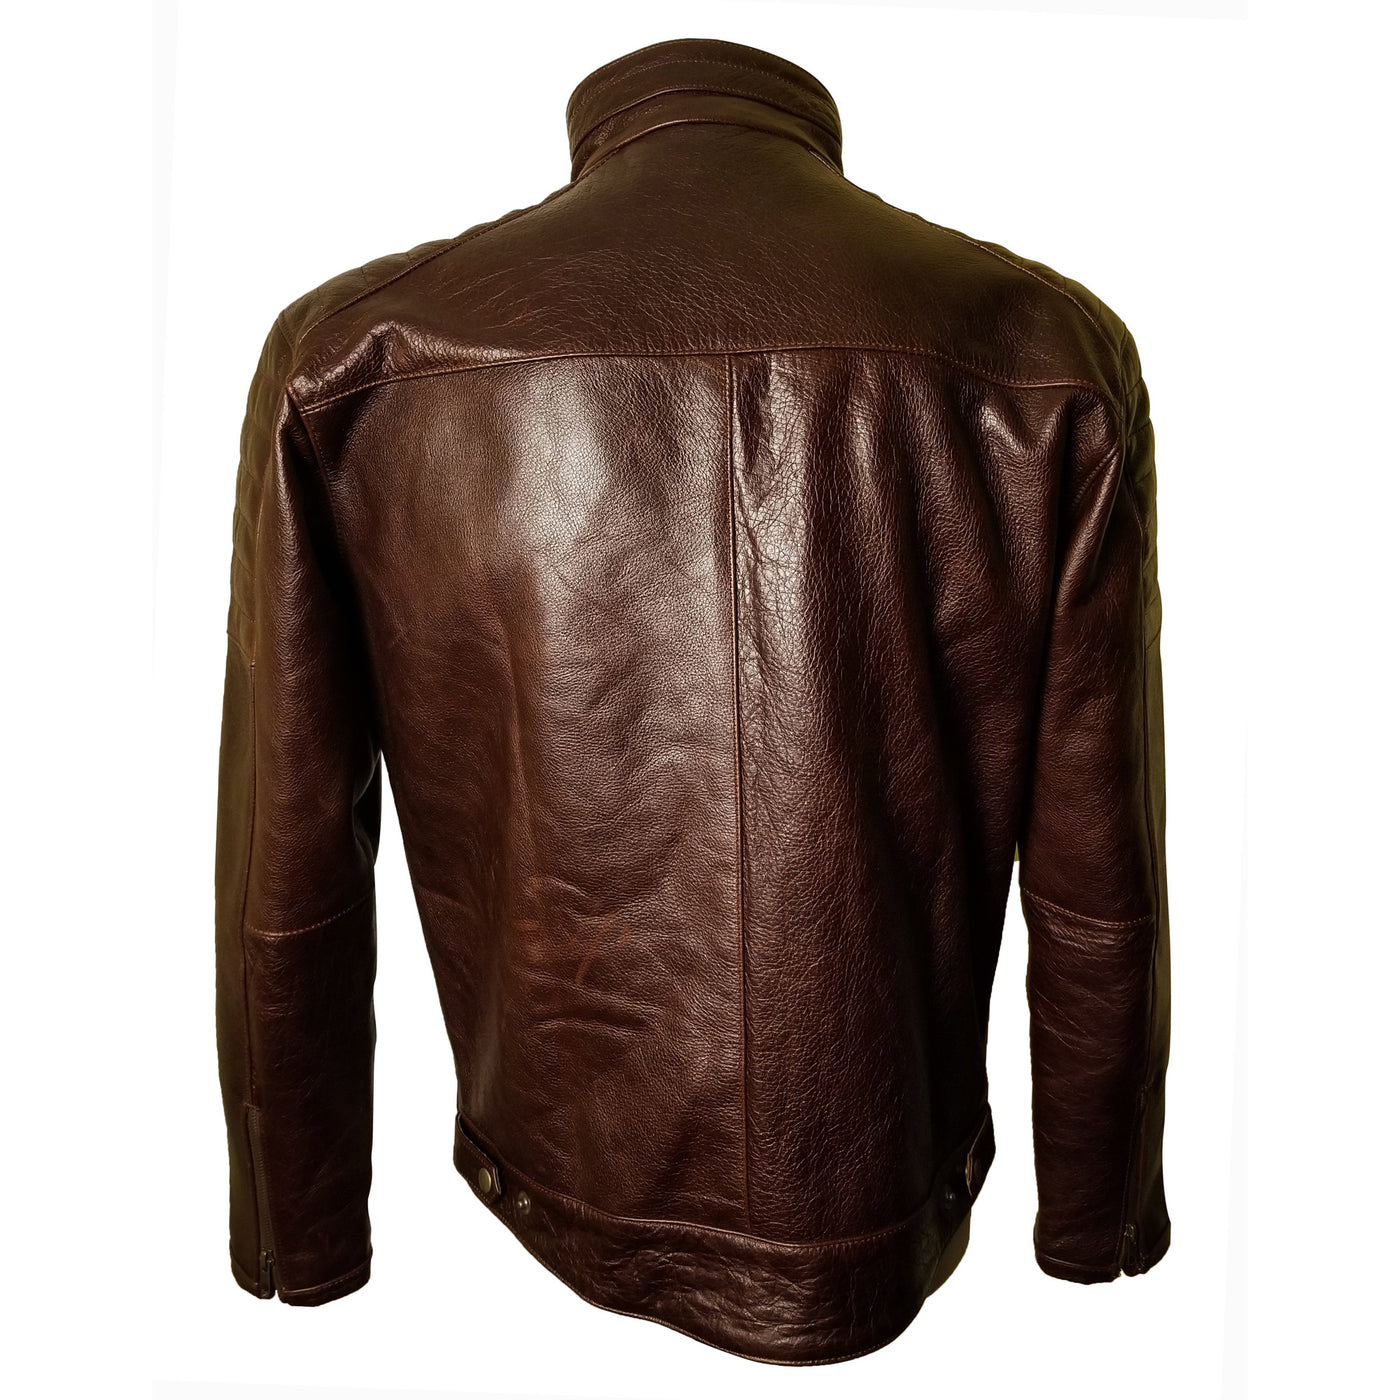 Mortons Vintage moto jacket with belt